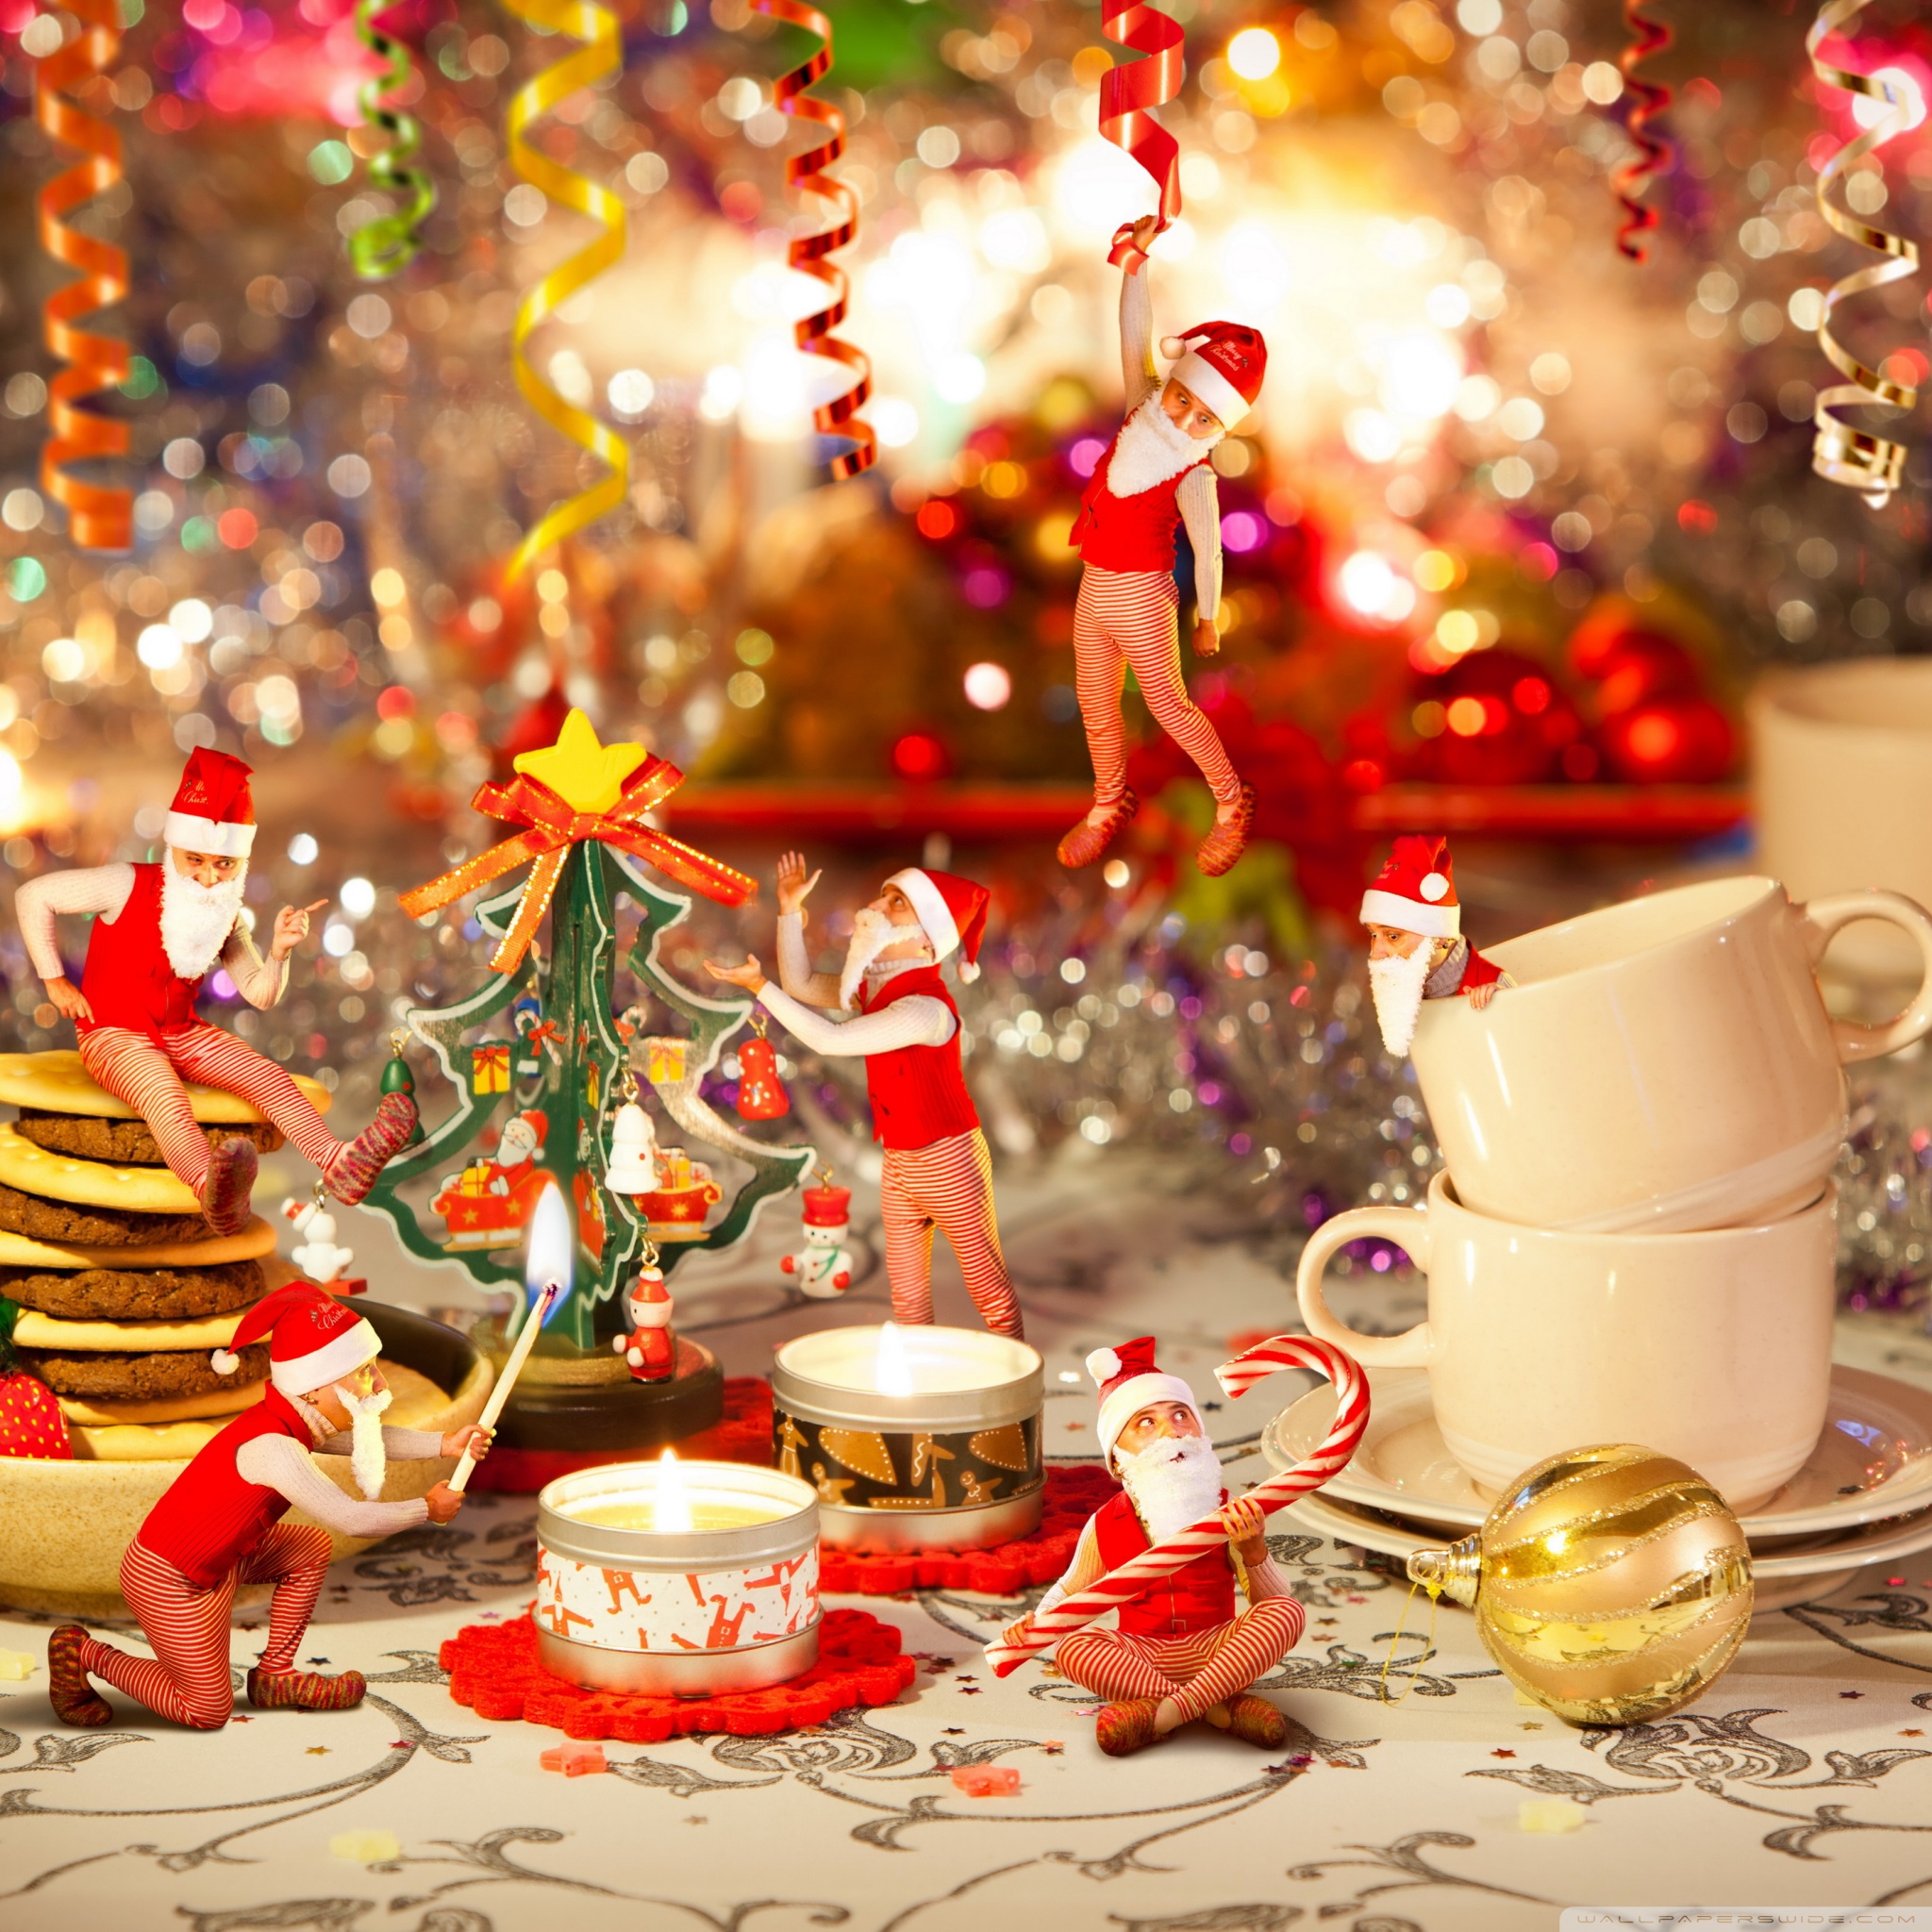 weihnachtstapete hd,heiligabend,weihnachtsdekoration,weihnachten,tradition,weihnachtsschmuck